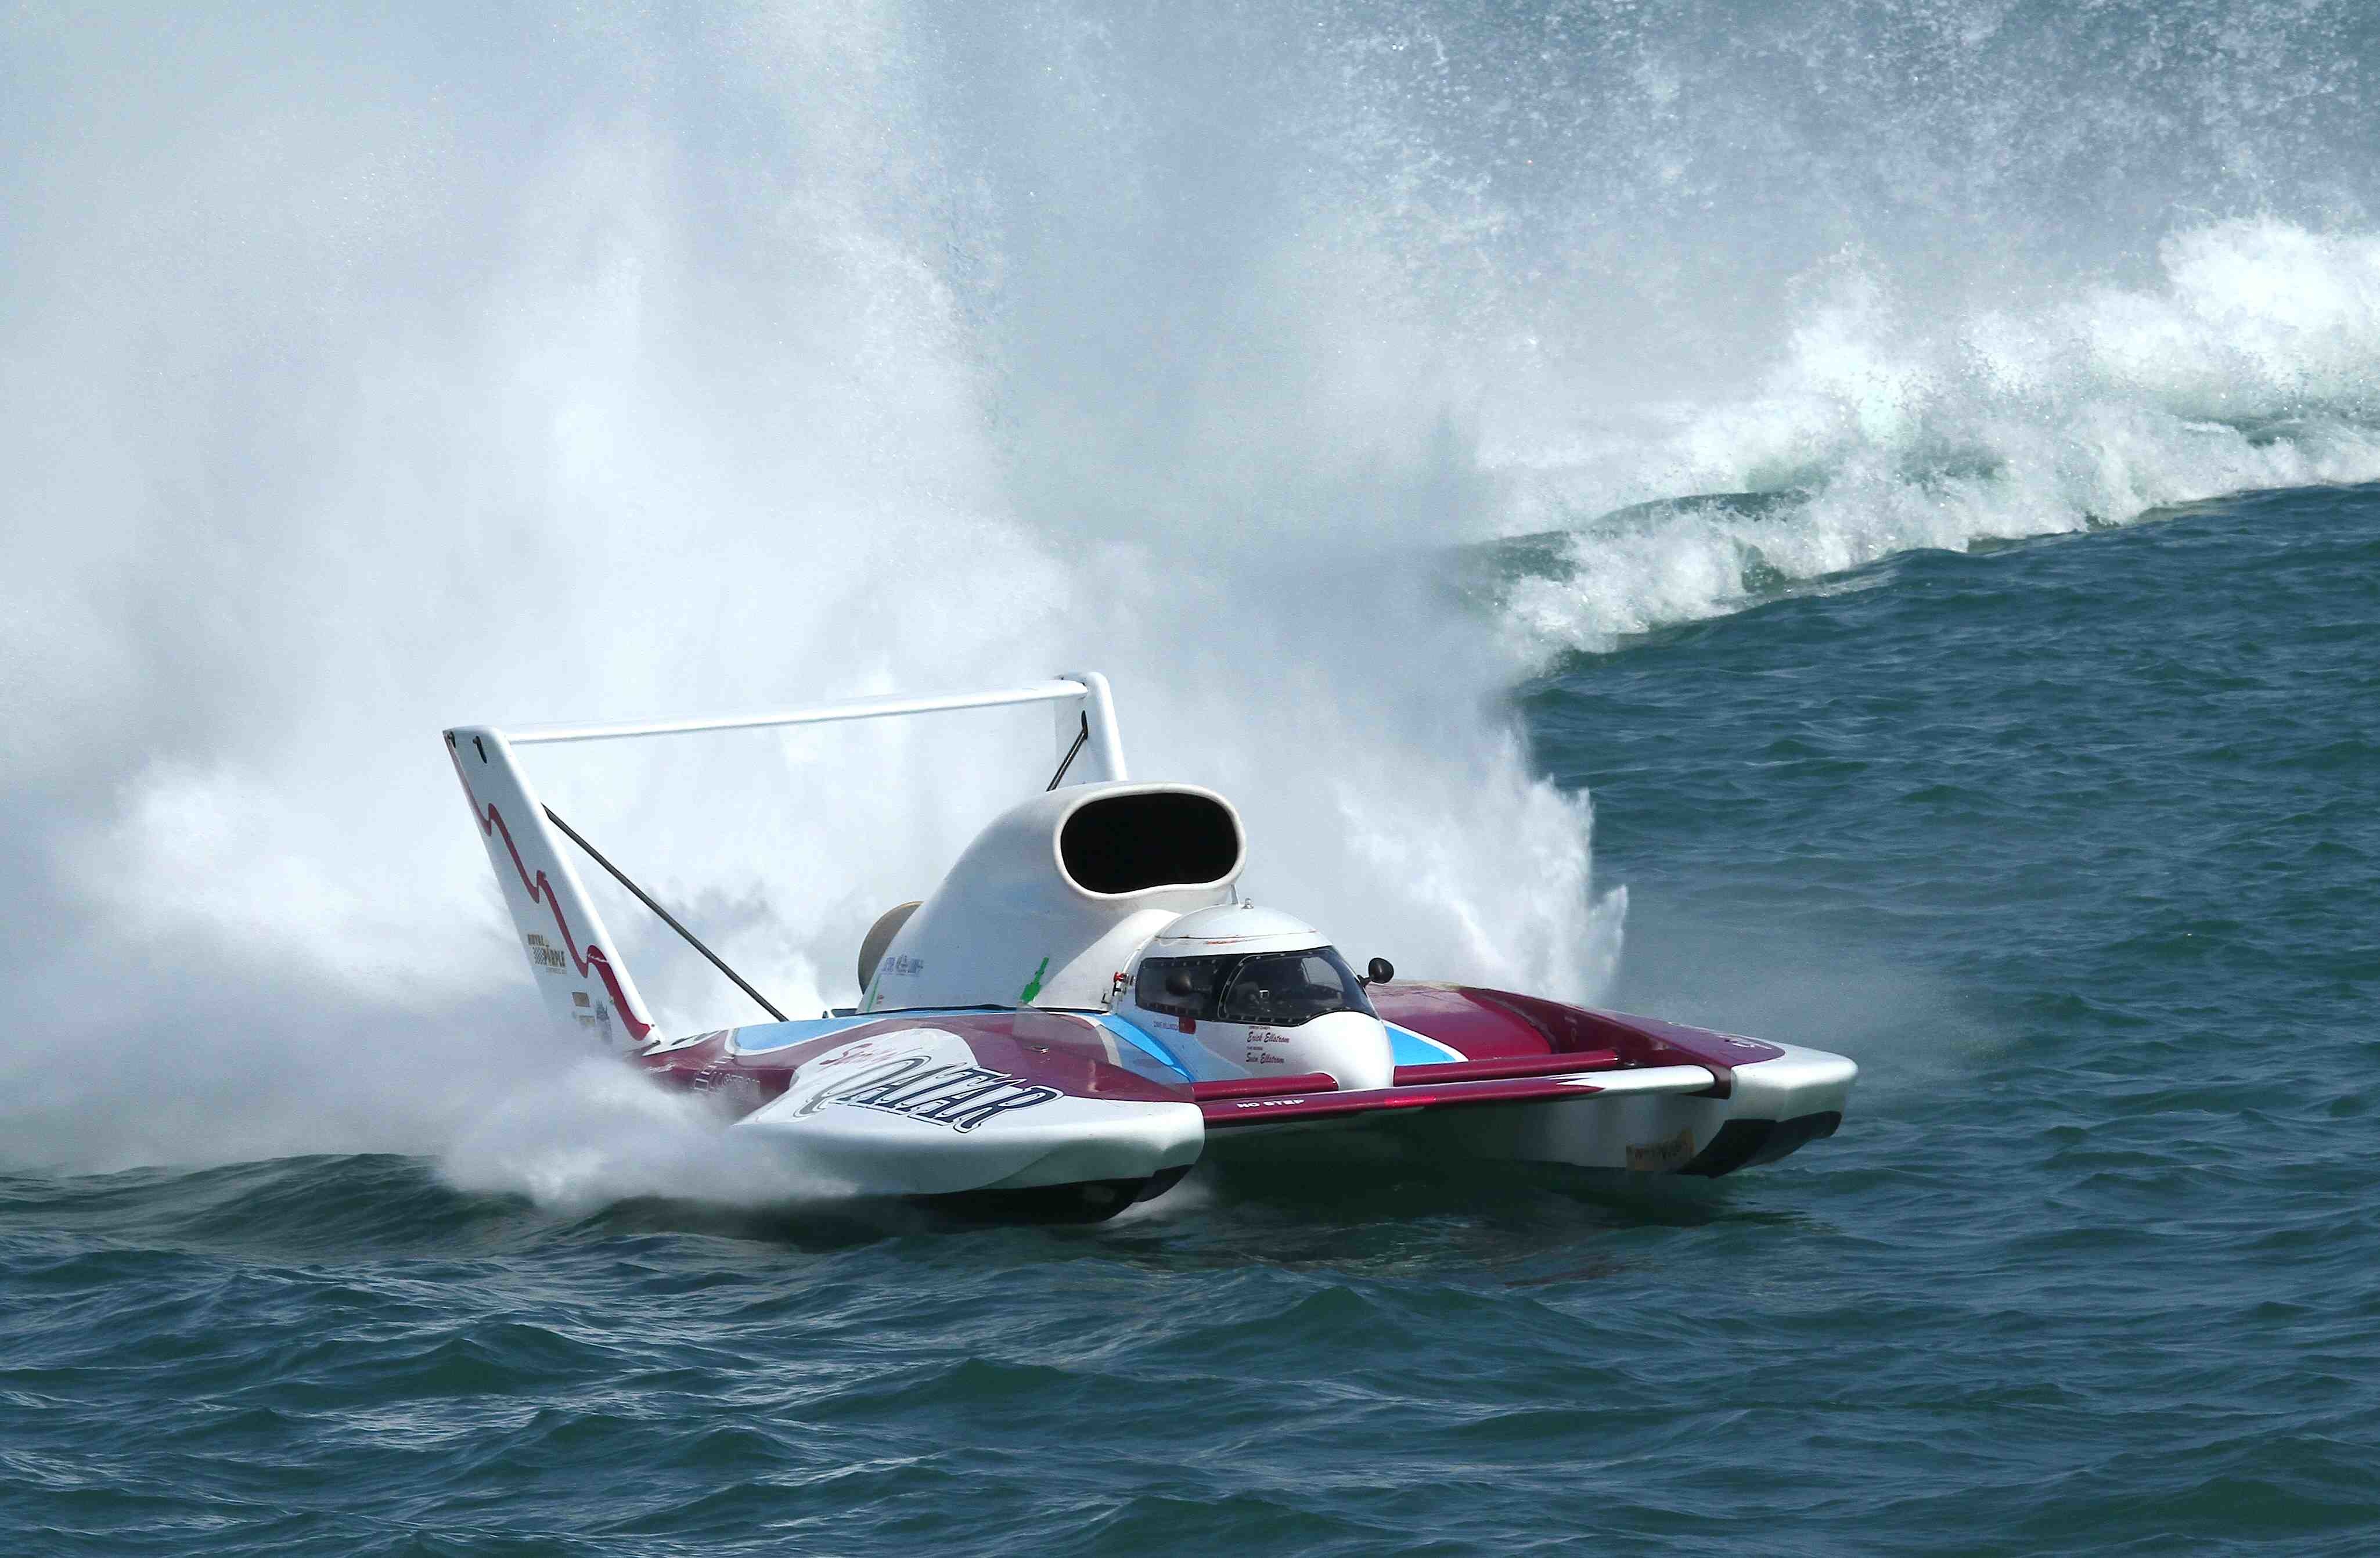 Легкая гоночная лодка. Полярис гидроплан. Катер Hydroplane. Гоночный катер. Гоночная моторная лодка.